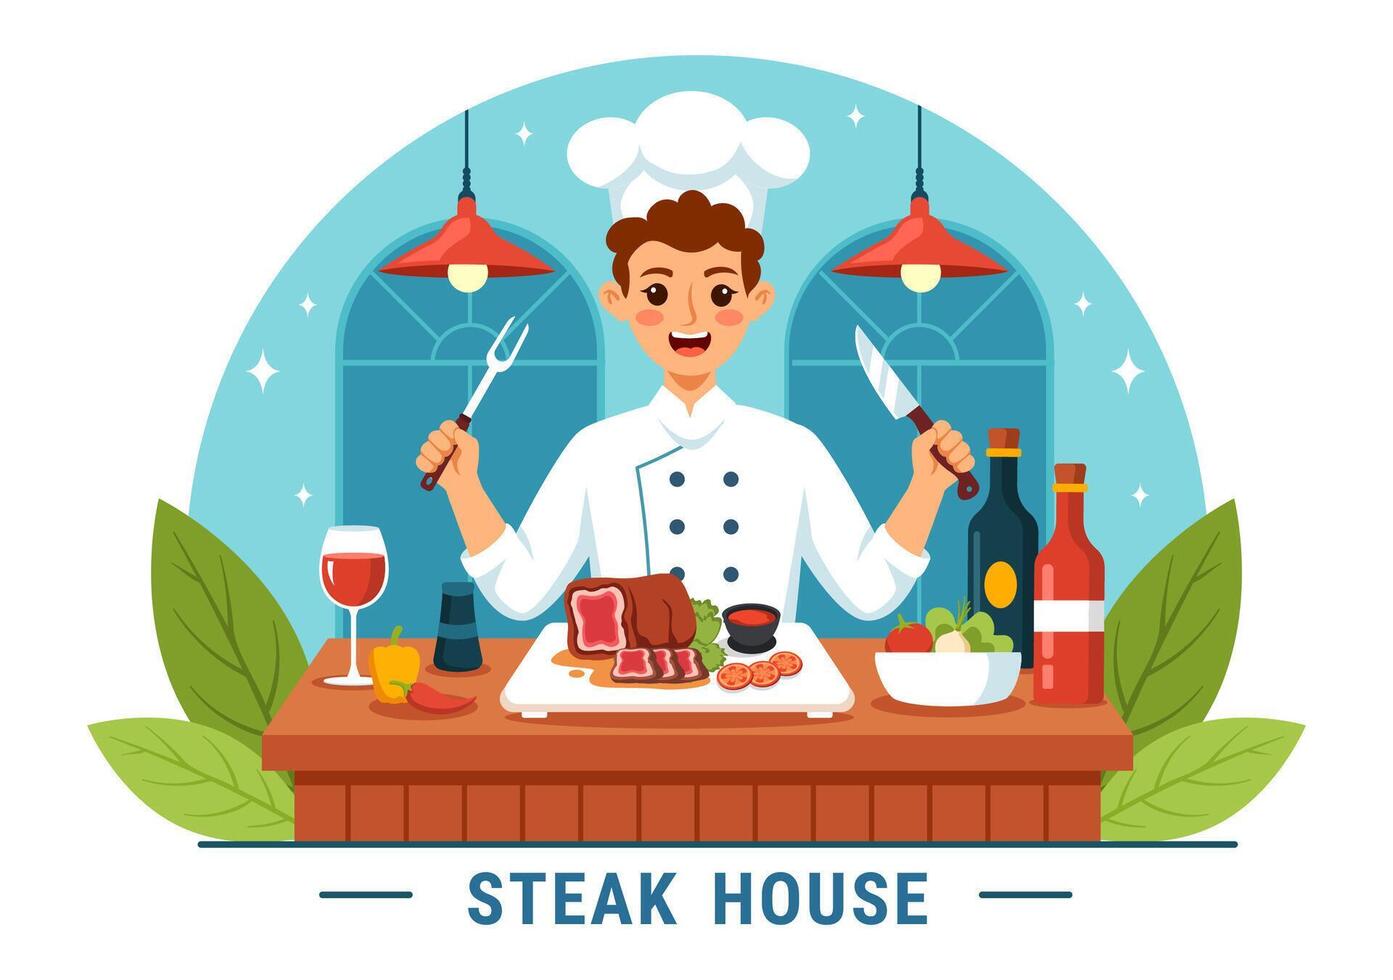 Steak House vektor illustration med restaurang den där tillhandahåller grillad kött med saftig utsökt biff, sallad och tomater för utegrill i bakgrund